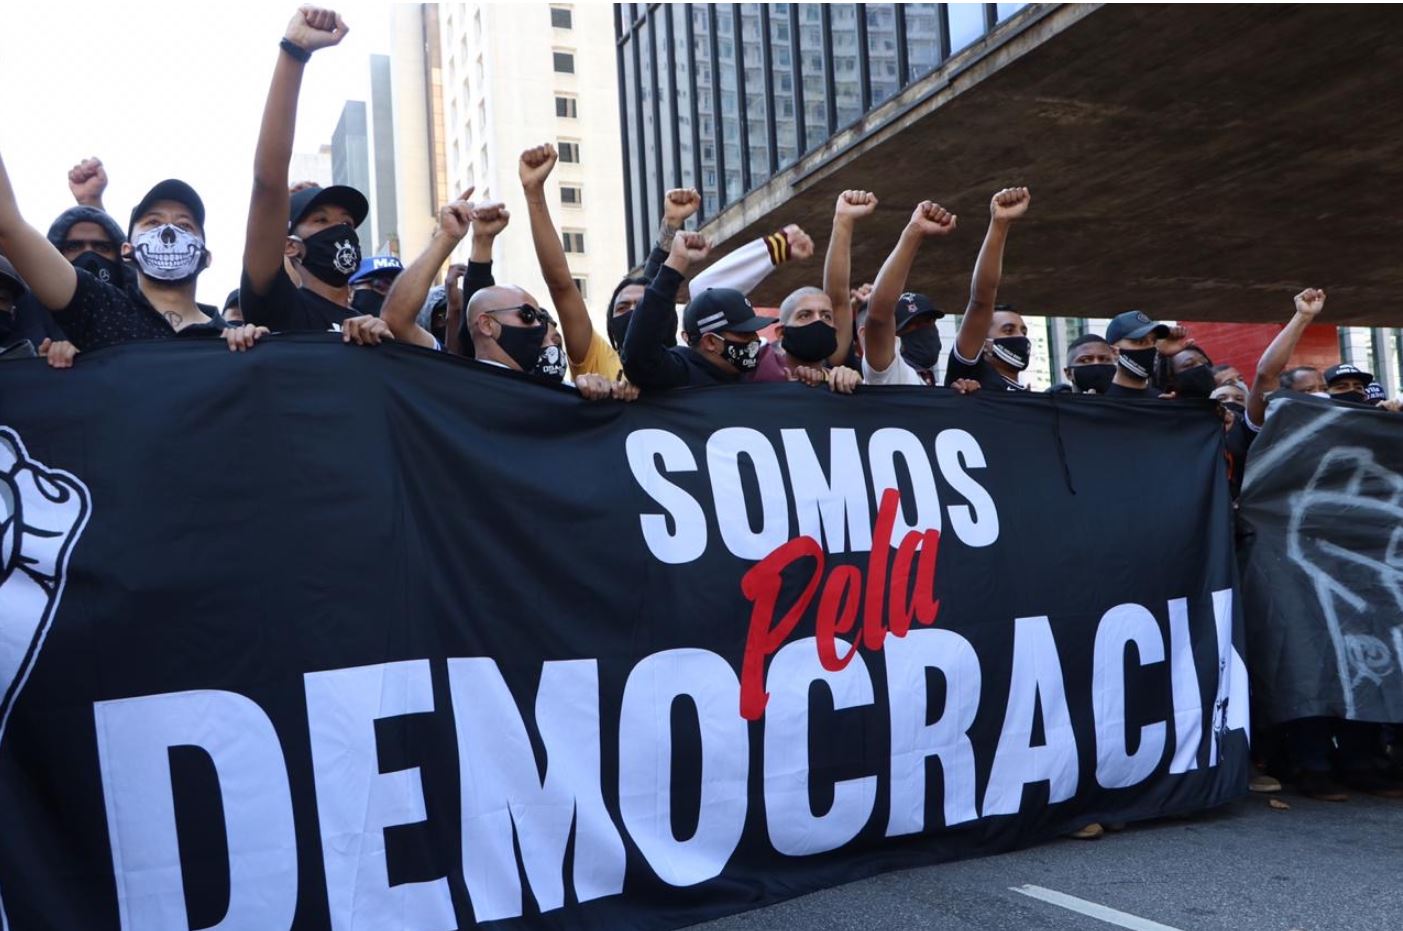 Faixa onde se lê "Somos pela democracia", com torcedores com punhos erguidos.